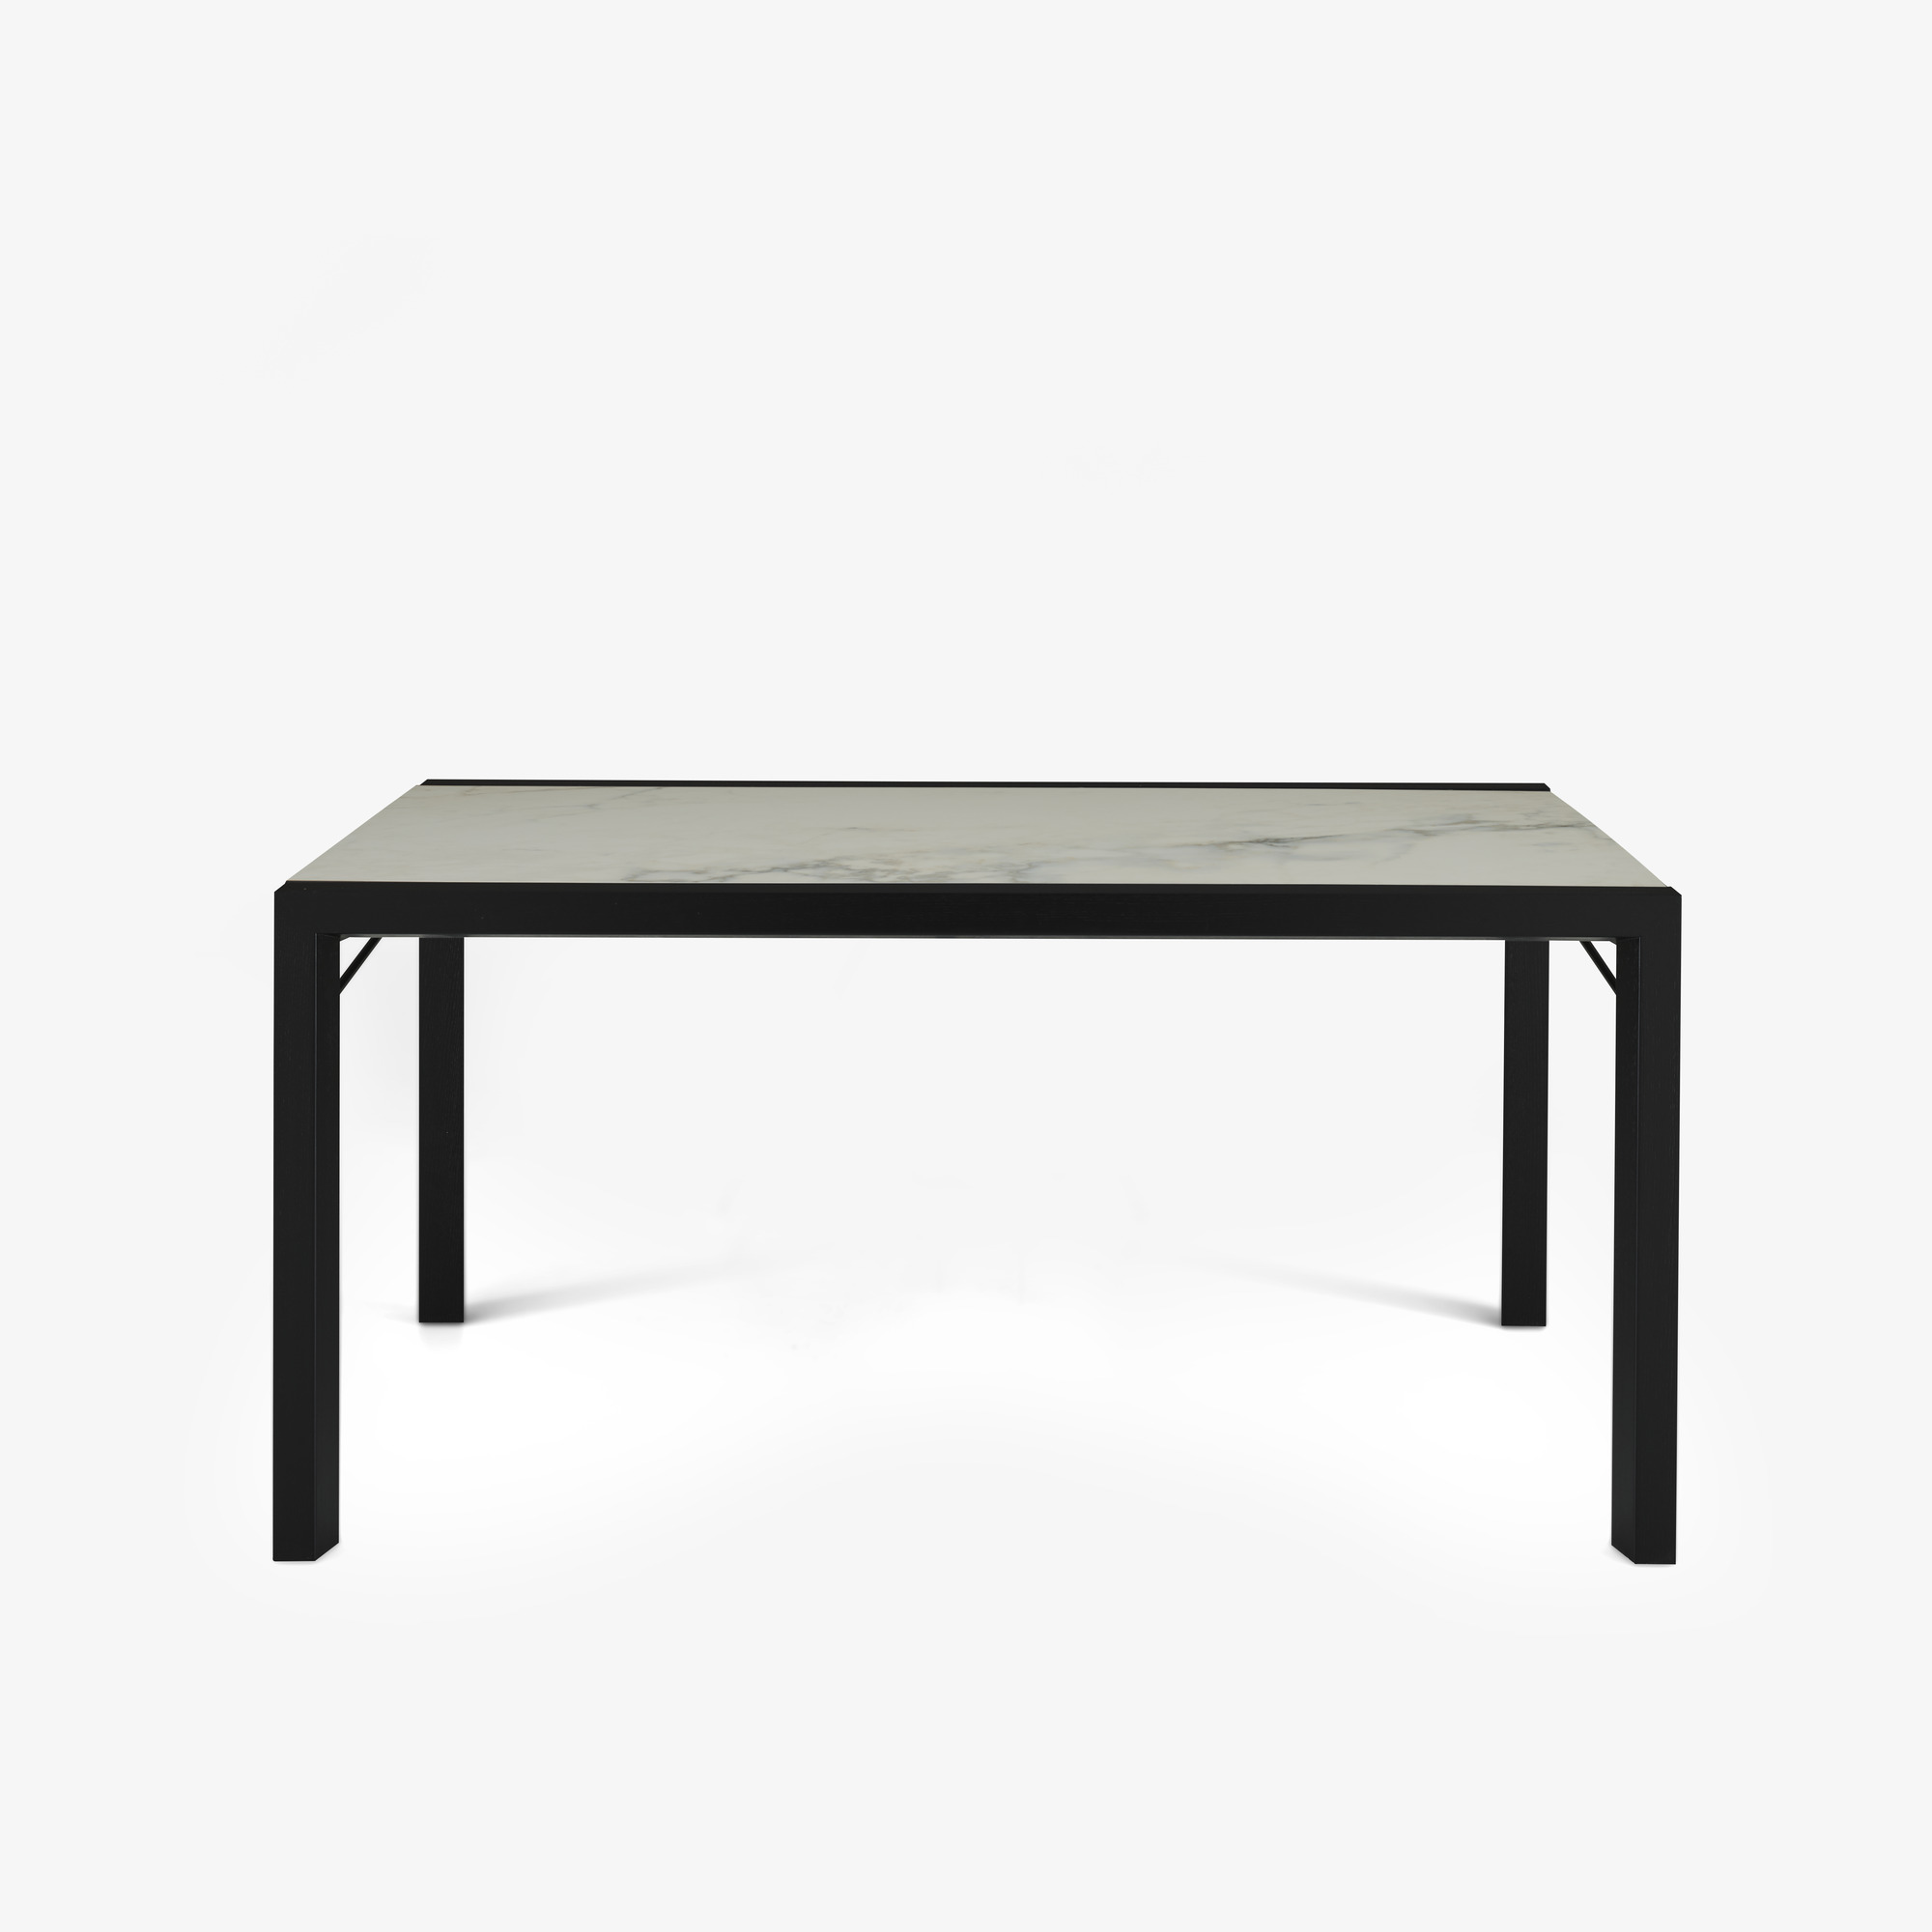 Image 餐桌 桌面由白色大理石效果的太空瓷制成 黑色白蜡木底座 1